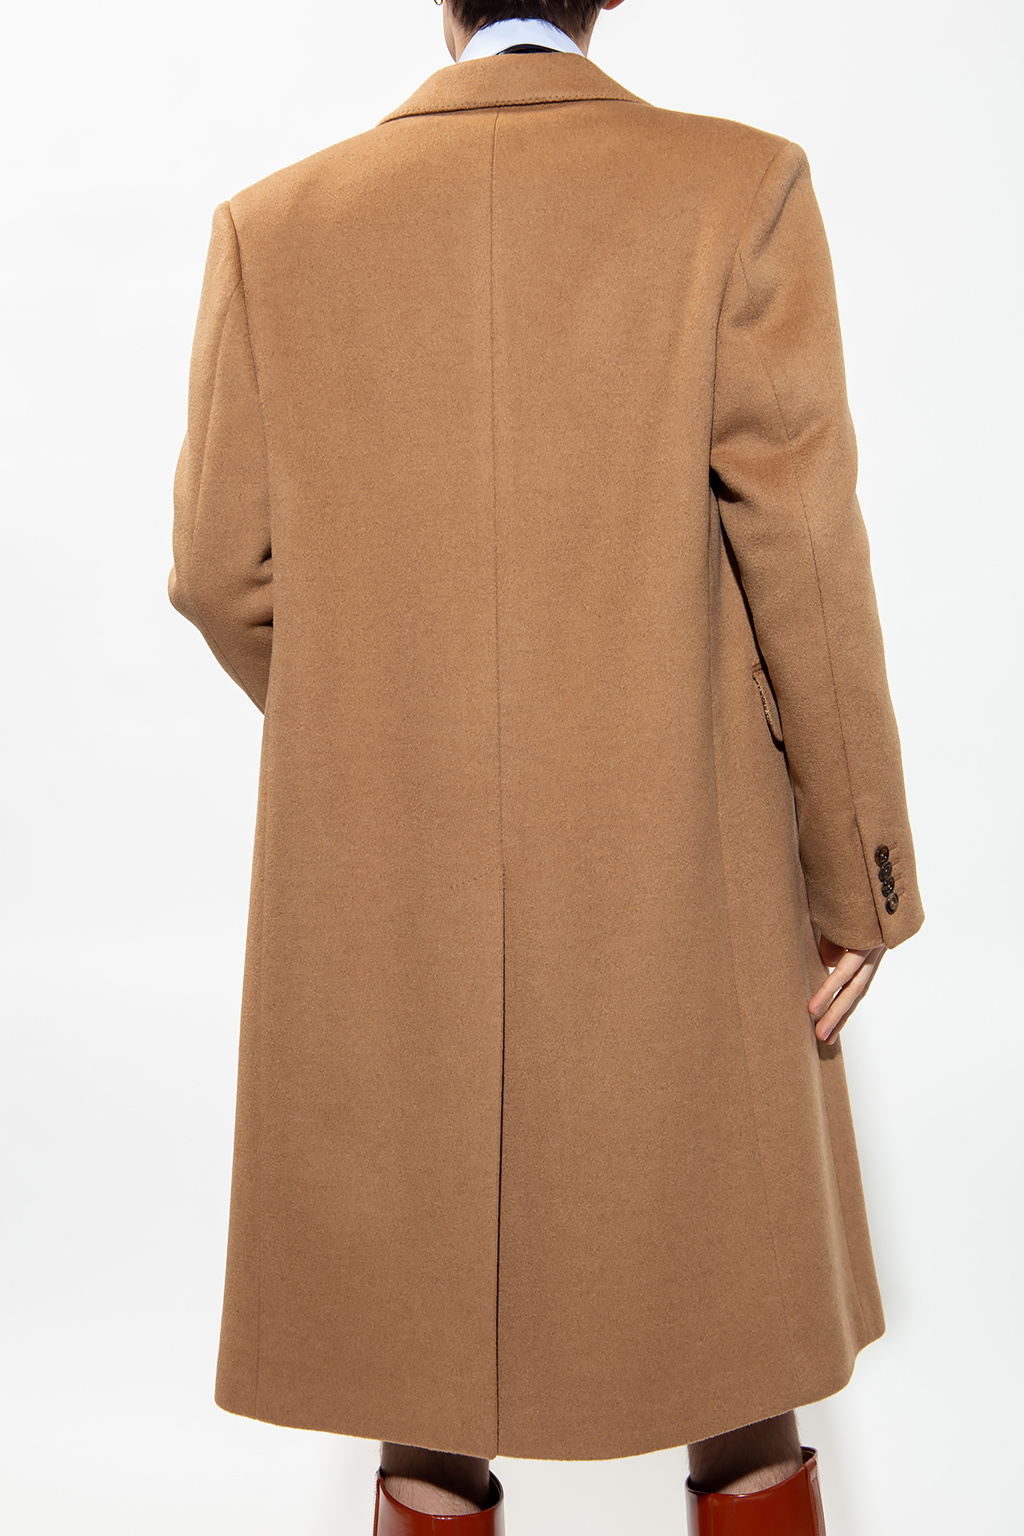 Gucci Camel-hair coat